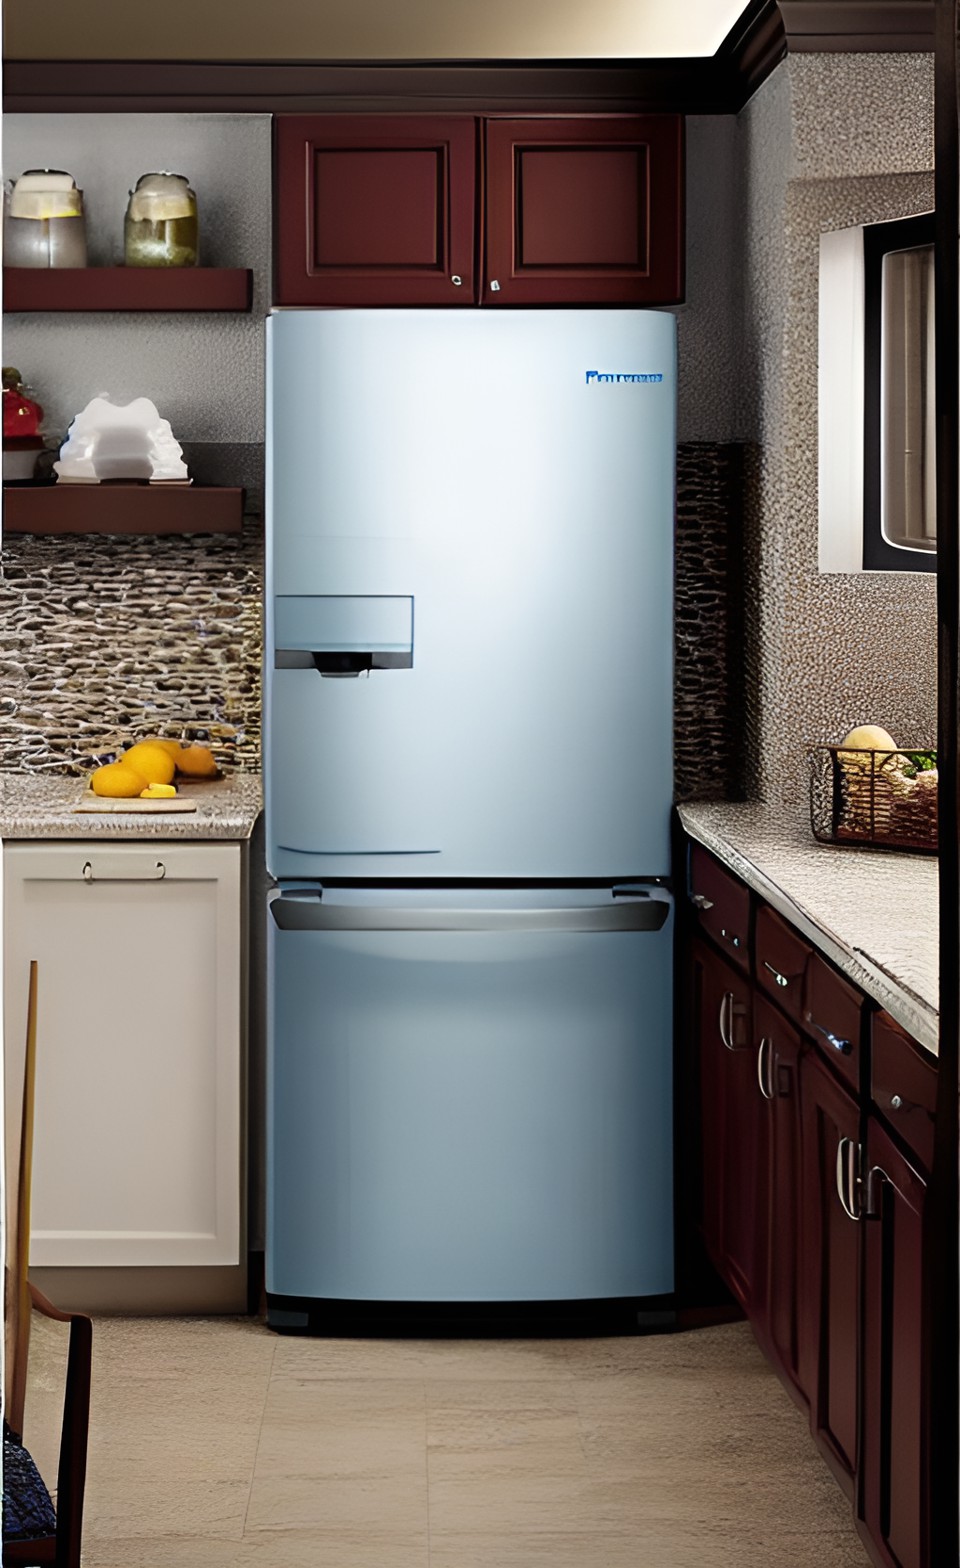 шаг ​5. дождаться завершения ремонта и наслаждаться исправной работой вашего холодильника!